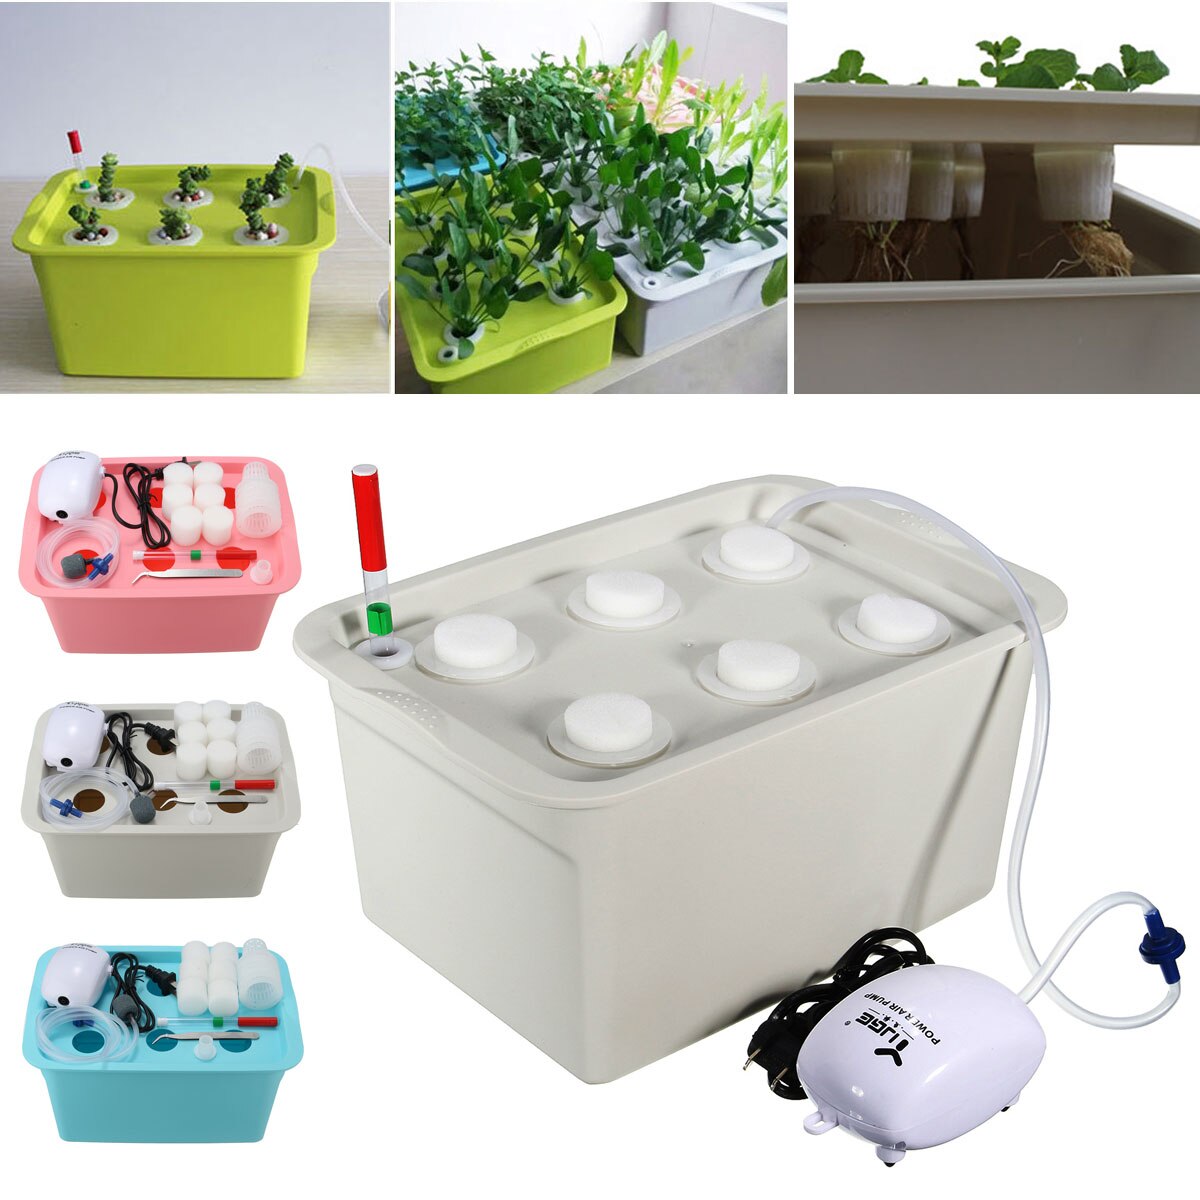 1 sæt 220v/110v plantesæt hydroponiske system kit 6 huller børnehave potter soilless dyrkning kasse plante kimplante vokse kasse kit